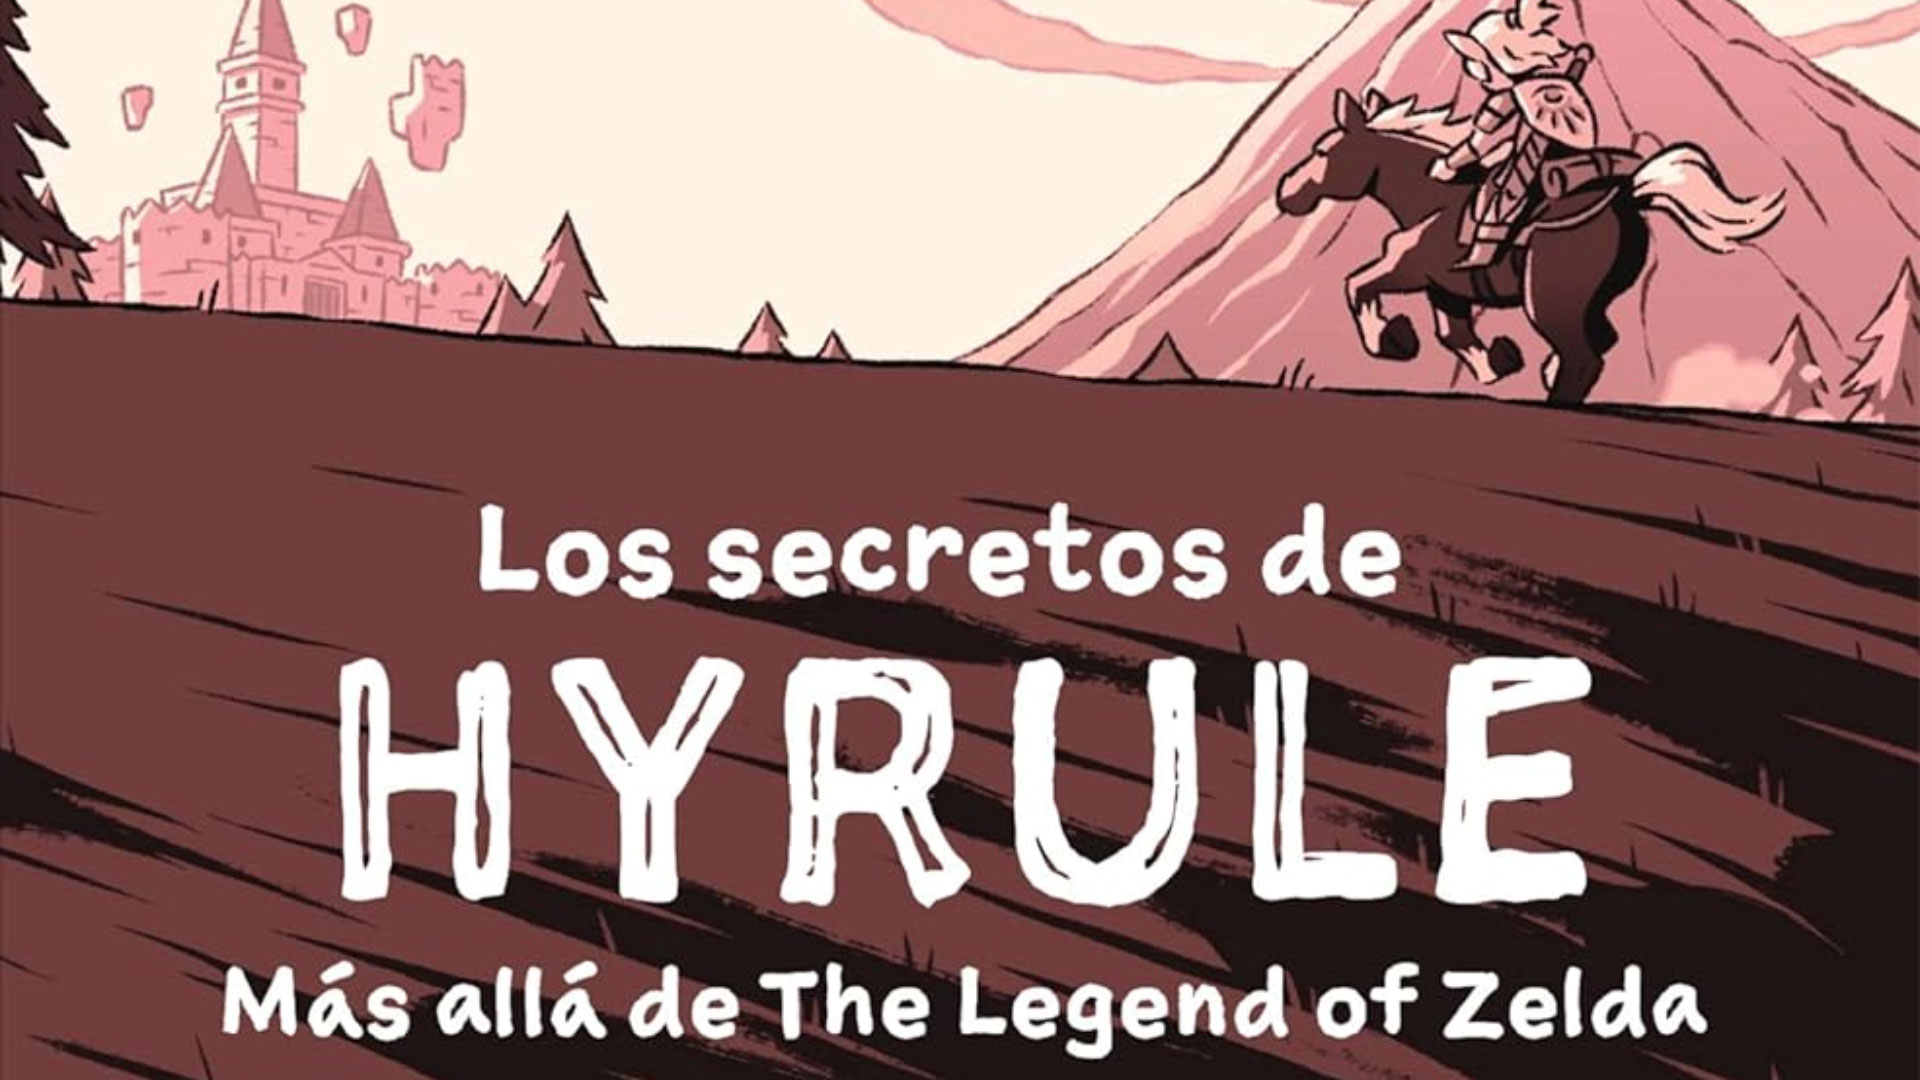 Los secretos de Hyrule: Más allá de The Legend of Zelda, de Adrián Suárez